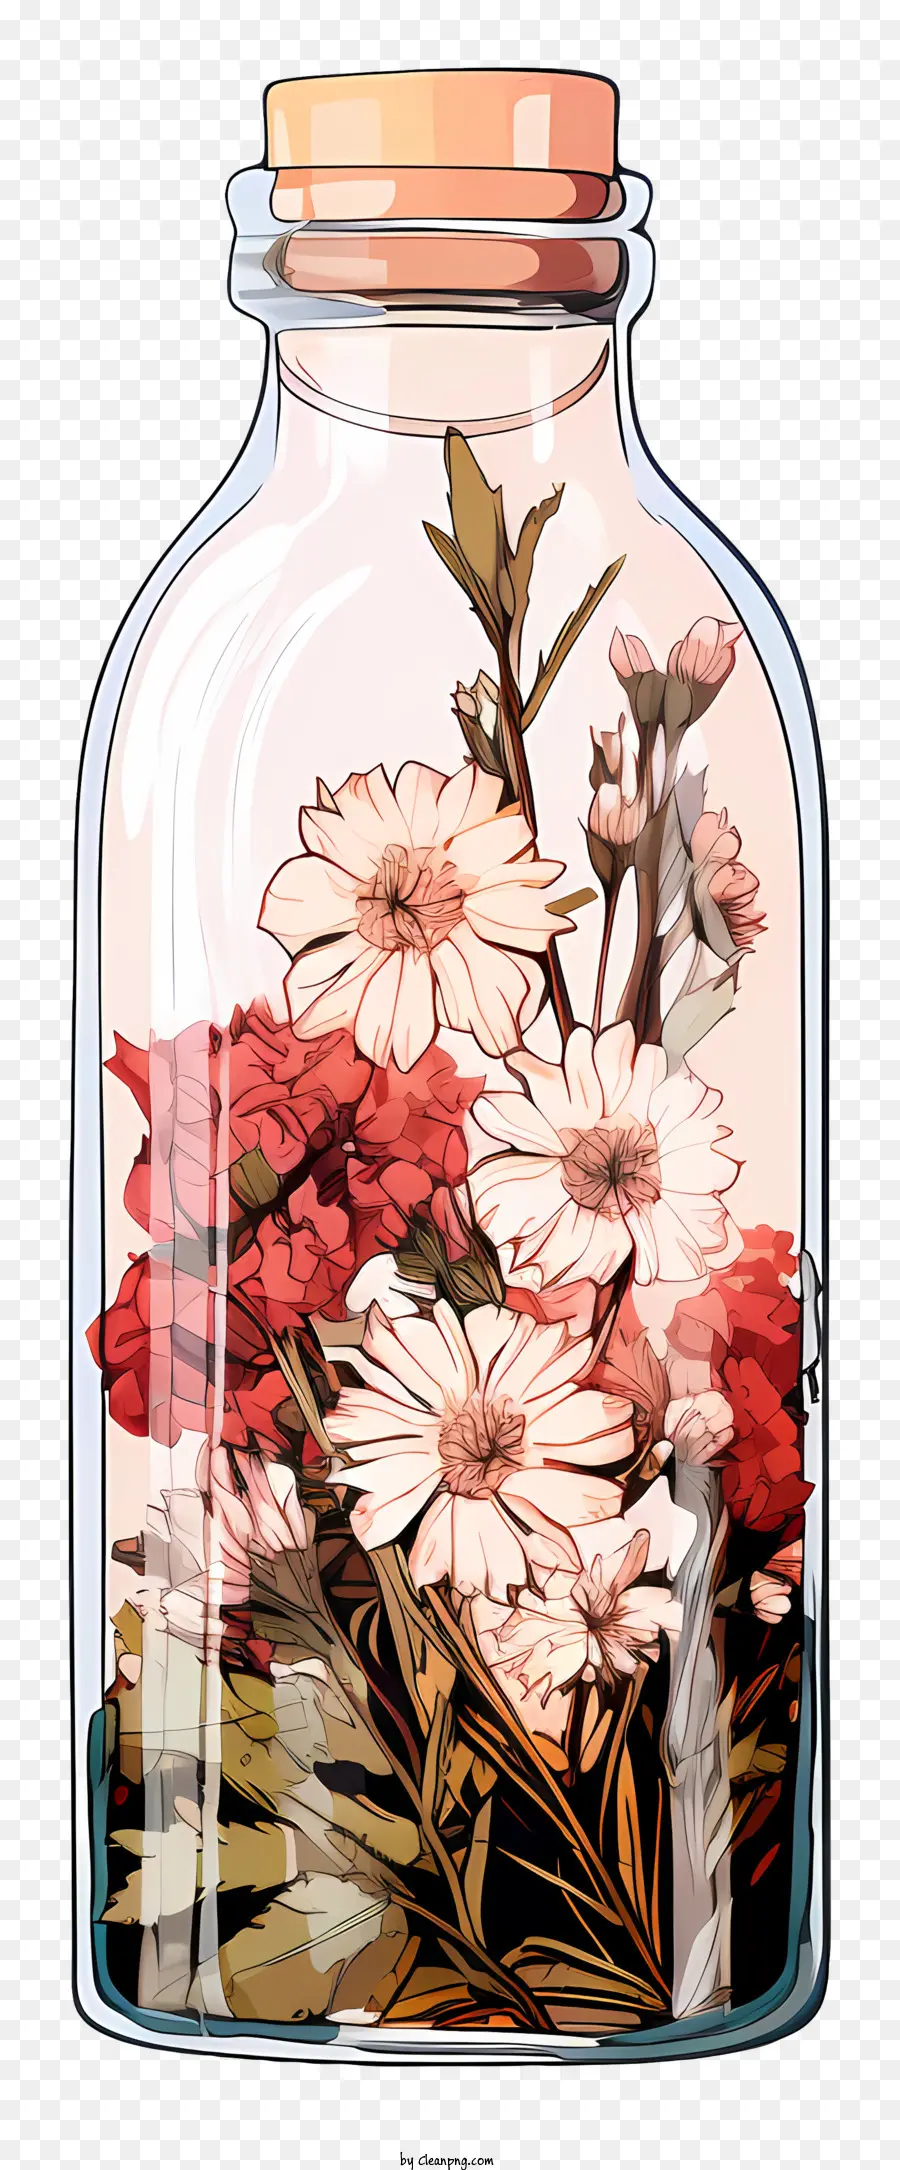 lọ thủy tinh thủy tinh khô với hoa nổi hoa tối giản cách sắp xếp hoa thiết kế phẳng lọ hoa - Một hình ảnh tối giản của những bông hoa trong một cái lọ